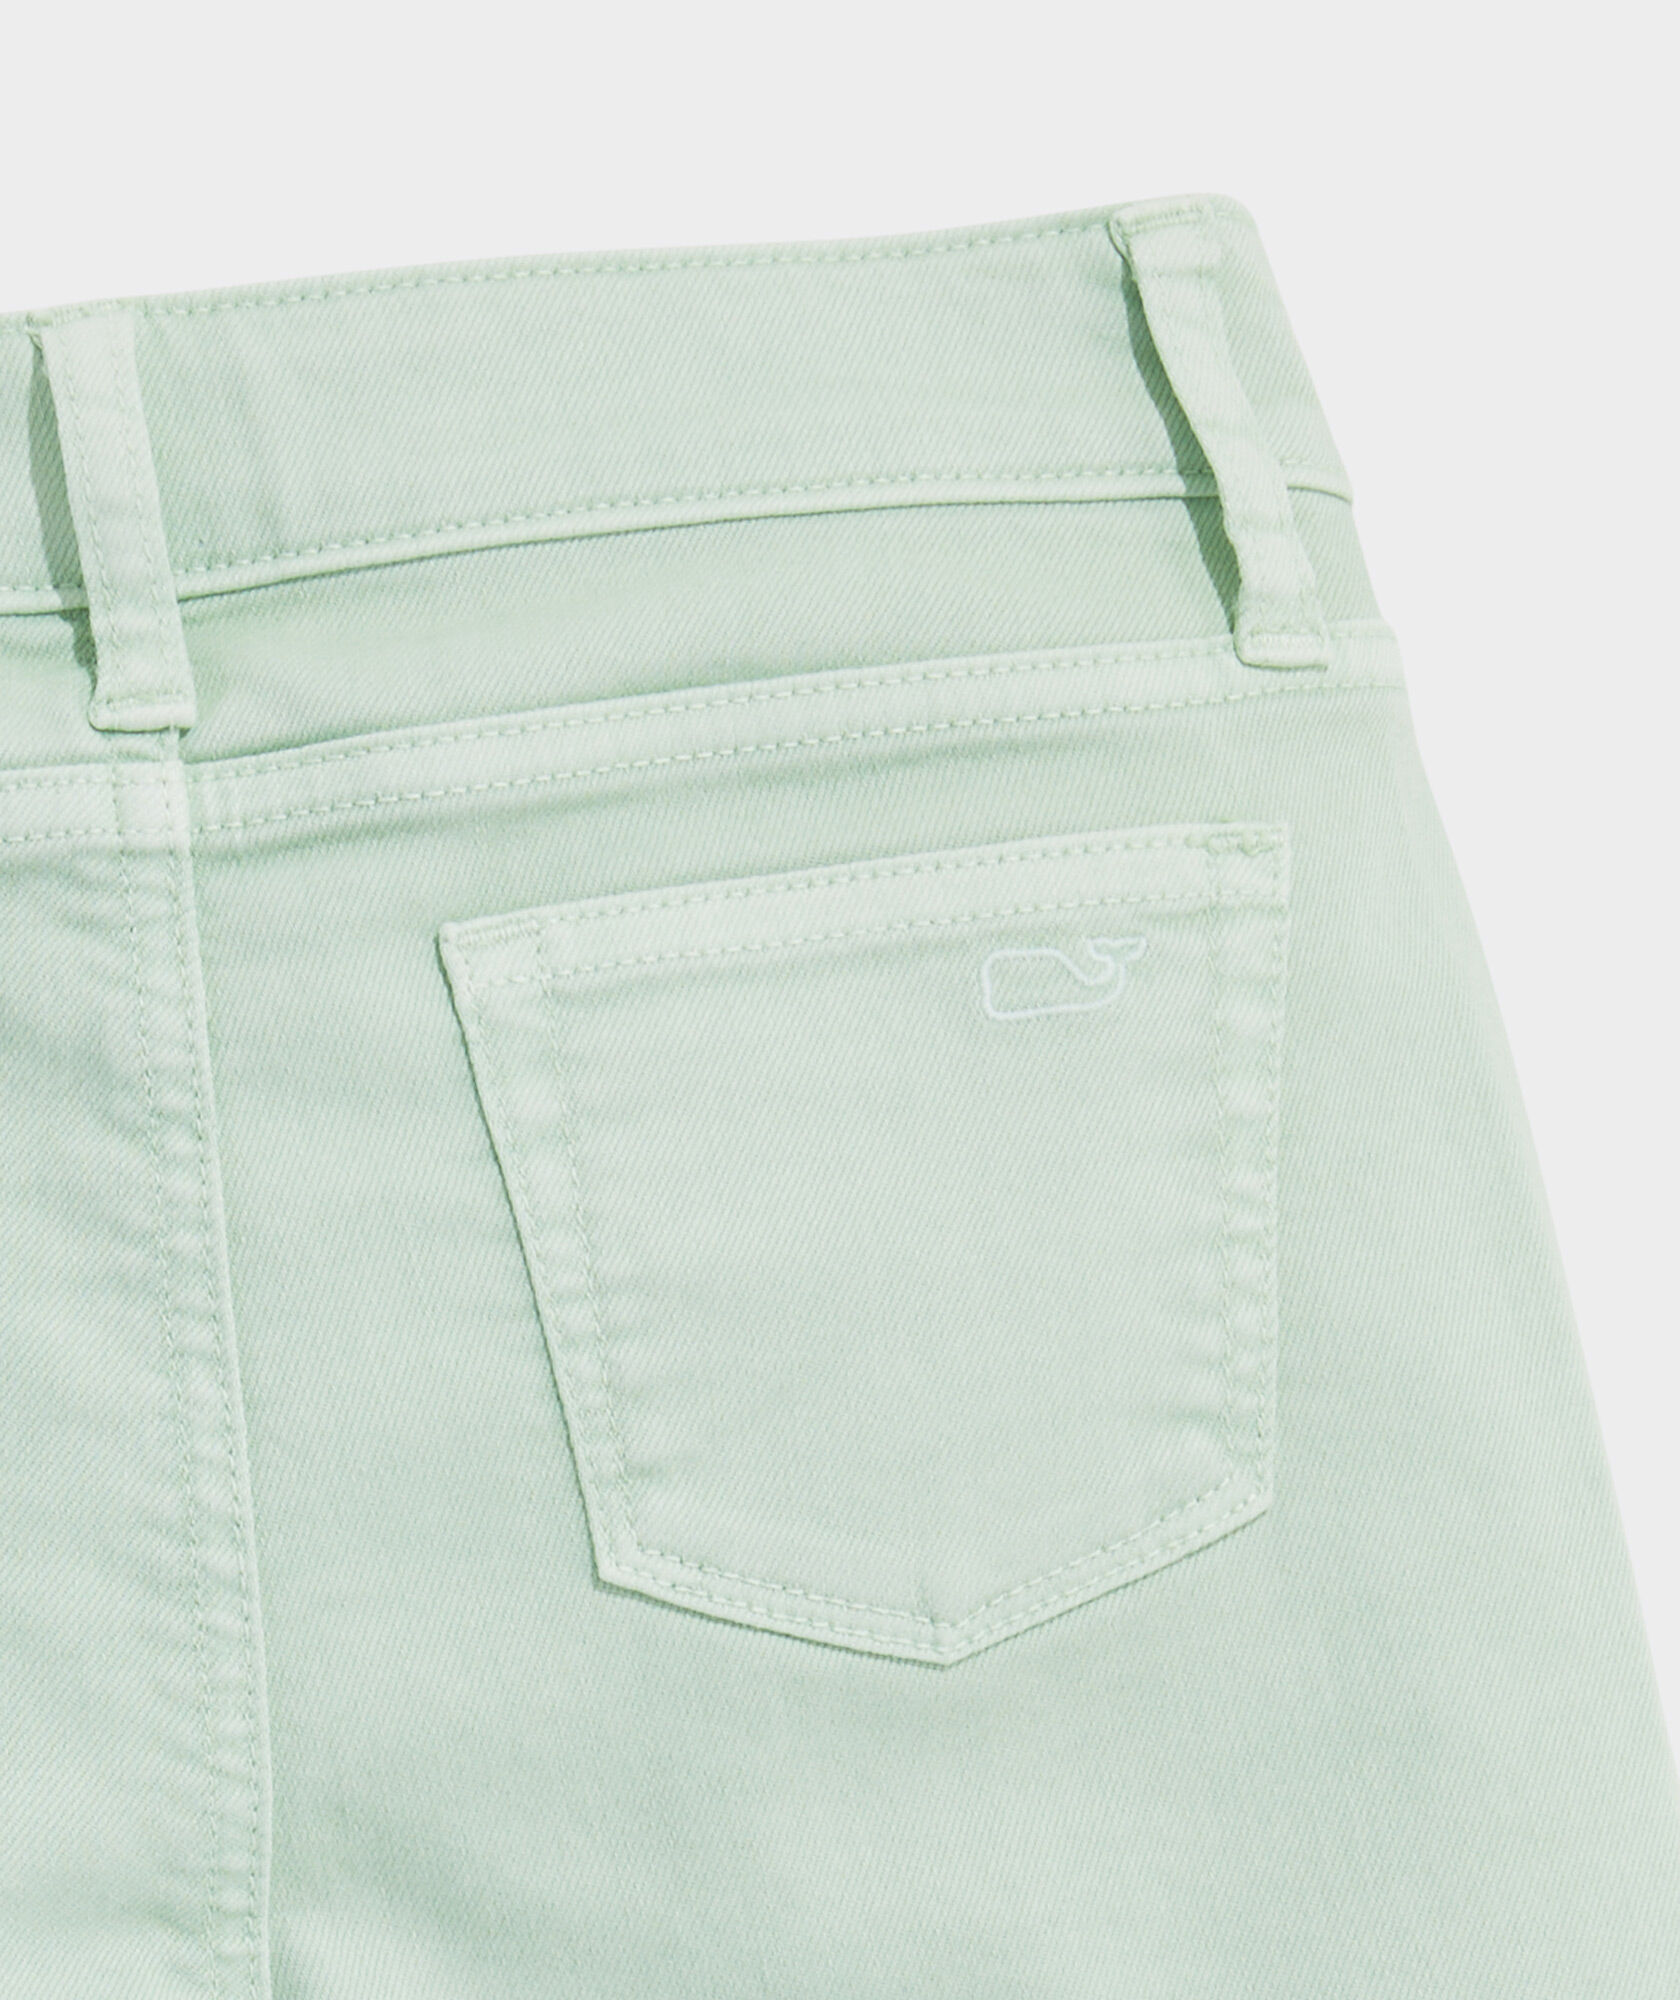 Girls Green Trousers - Buy Girls Green Trousers online in India